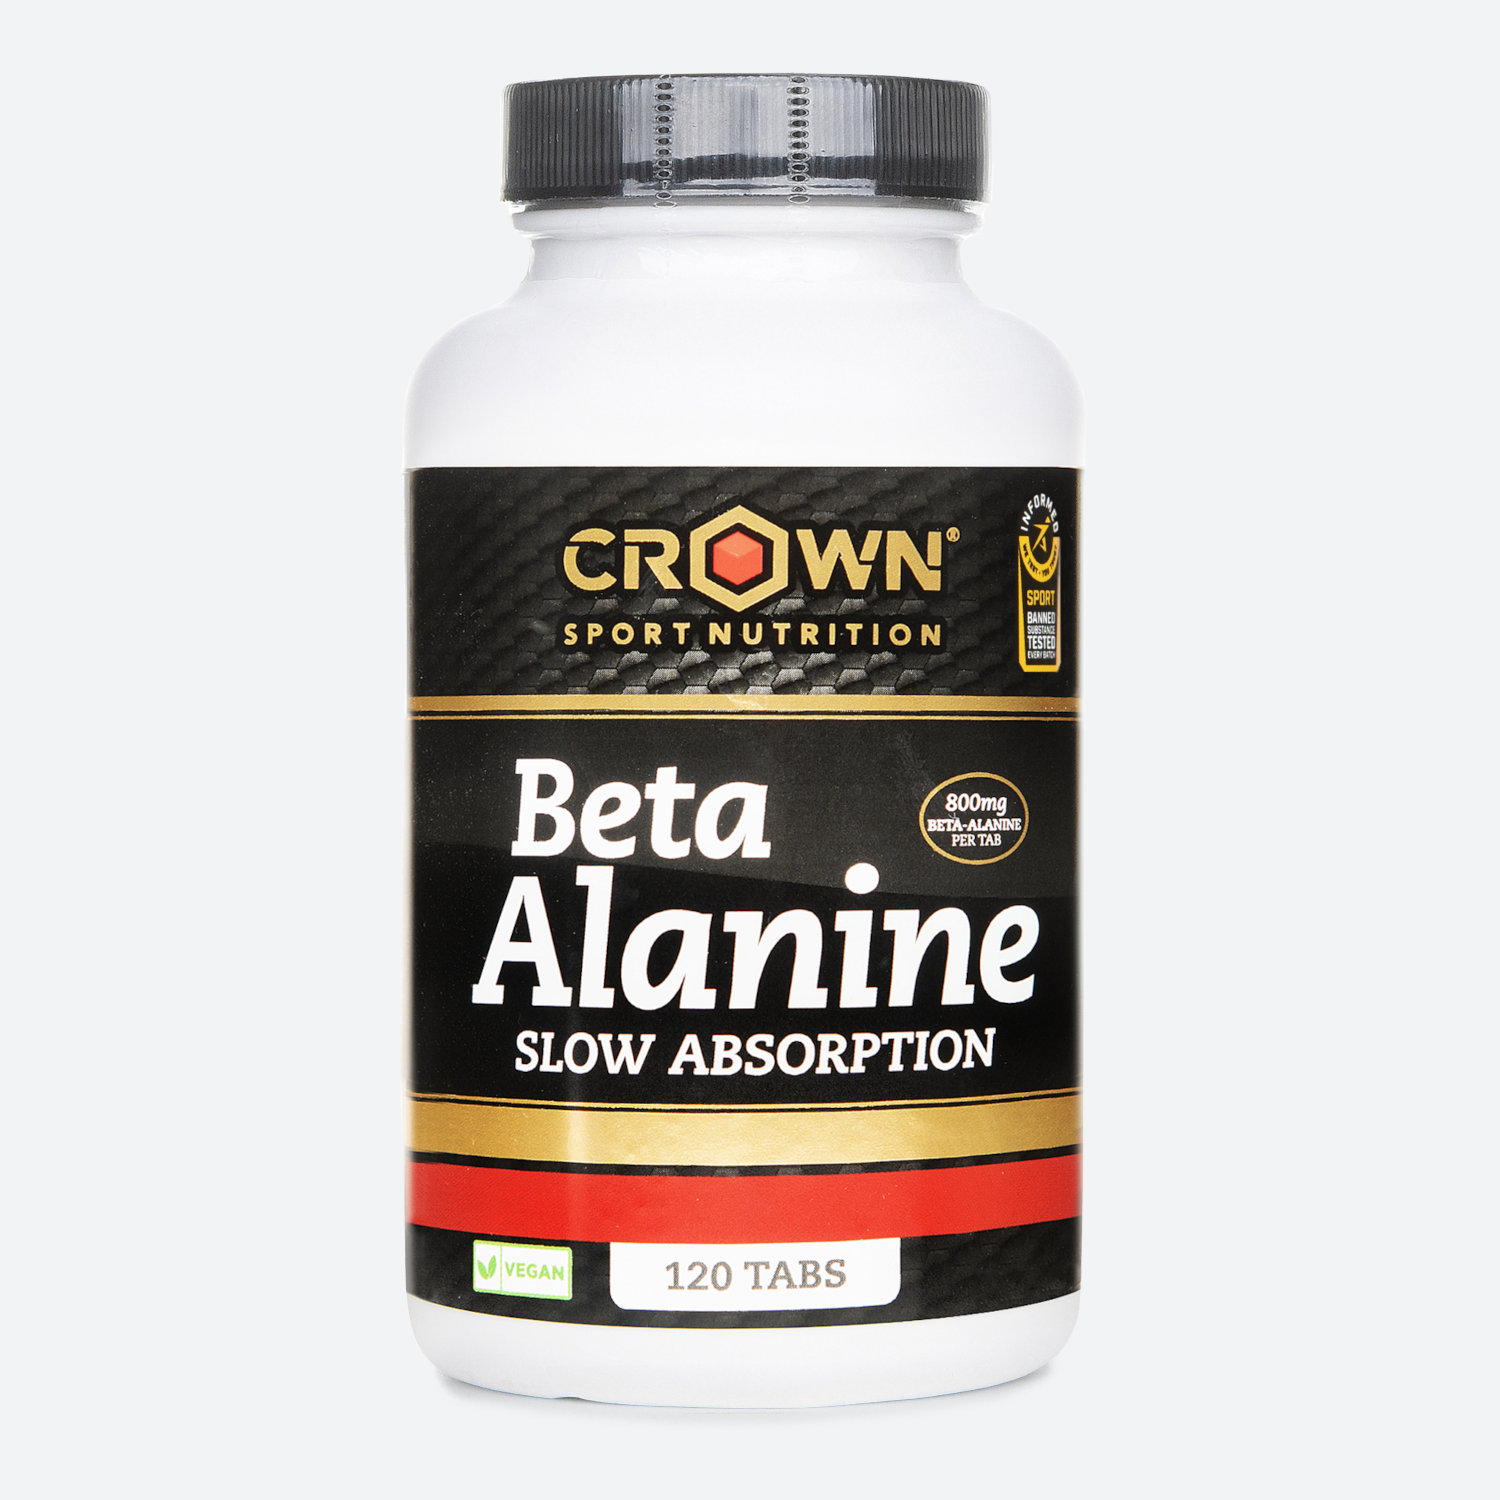 Bote De Aminoácidos No Esenciales ‘beta Alanine Slow Absortion‘ 120 Cápsulas